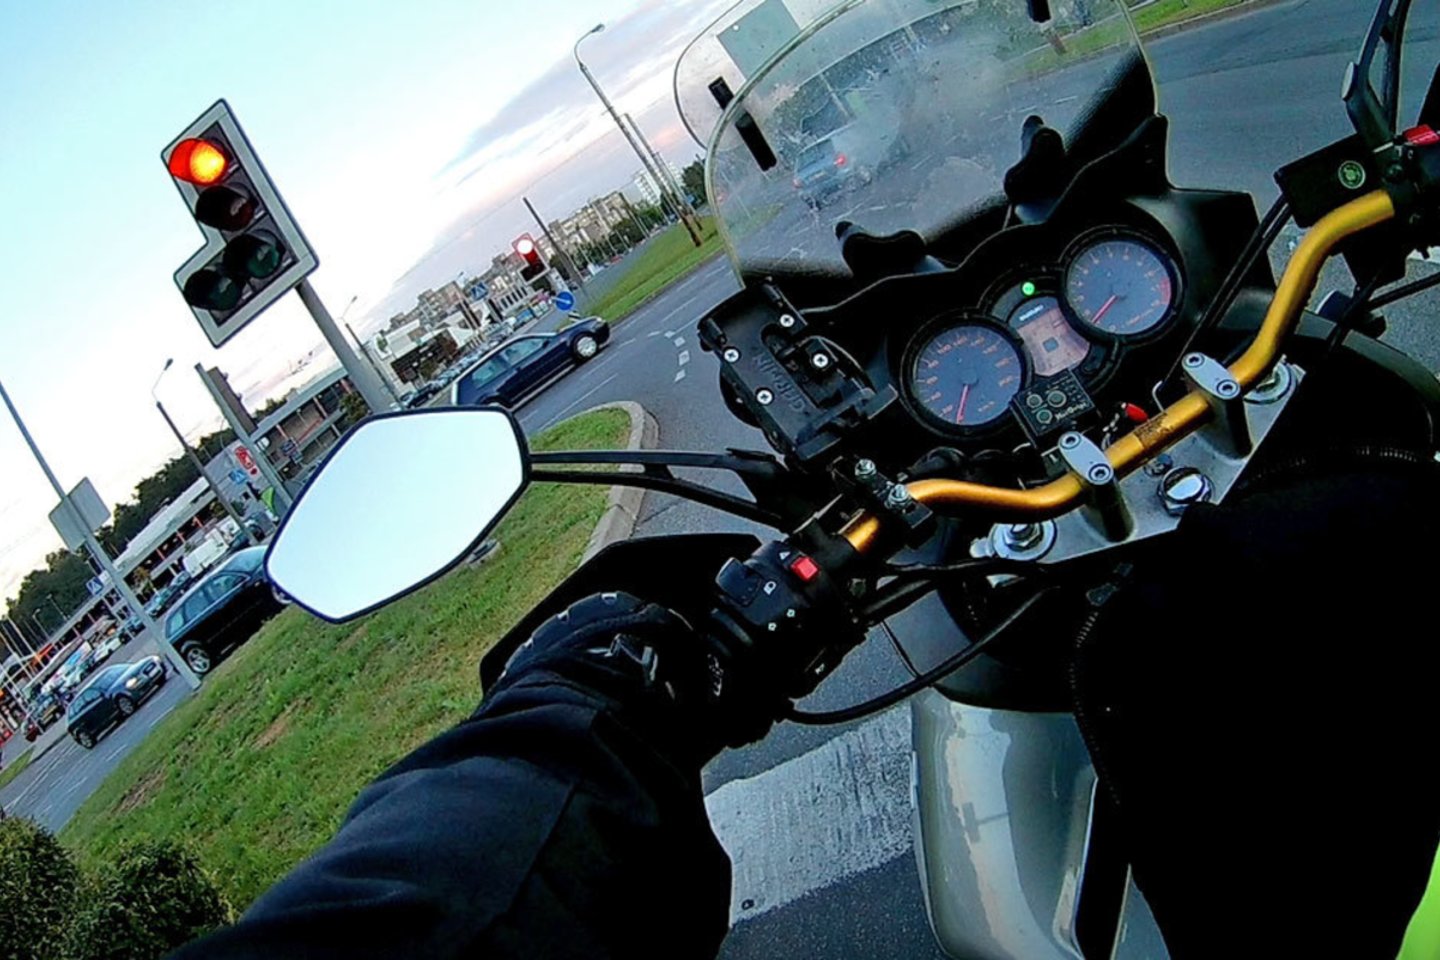  Motociklu važiavęs vilnietis šioje sankryžoje susidūrė su netikėtomis problemomis.<br> Stop kadras iš vaizdo medžiagos